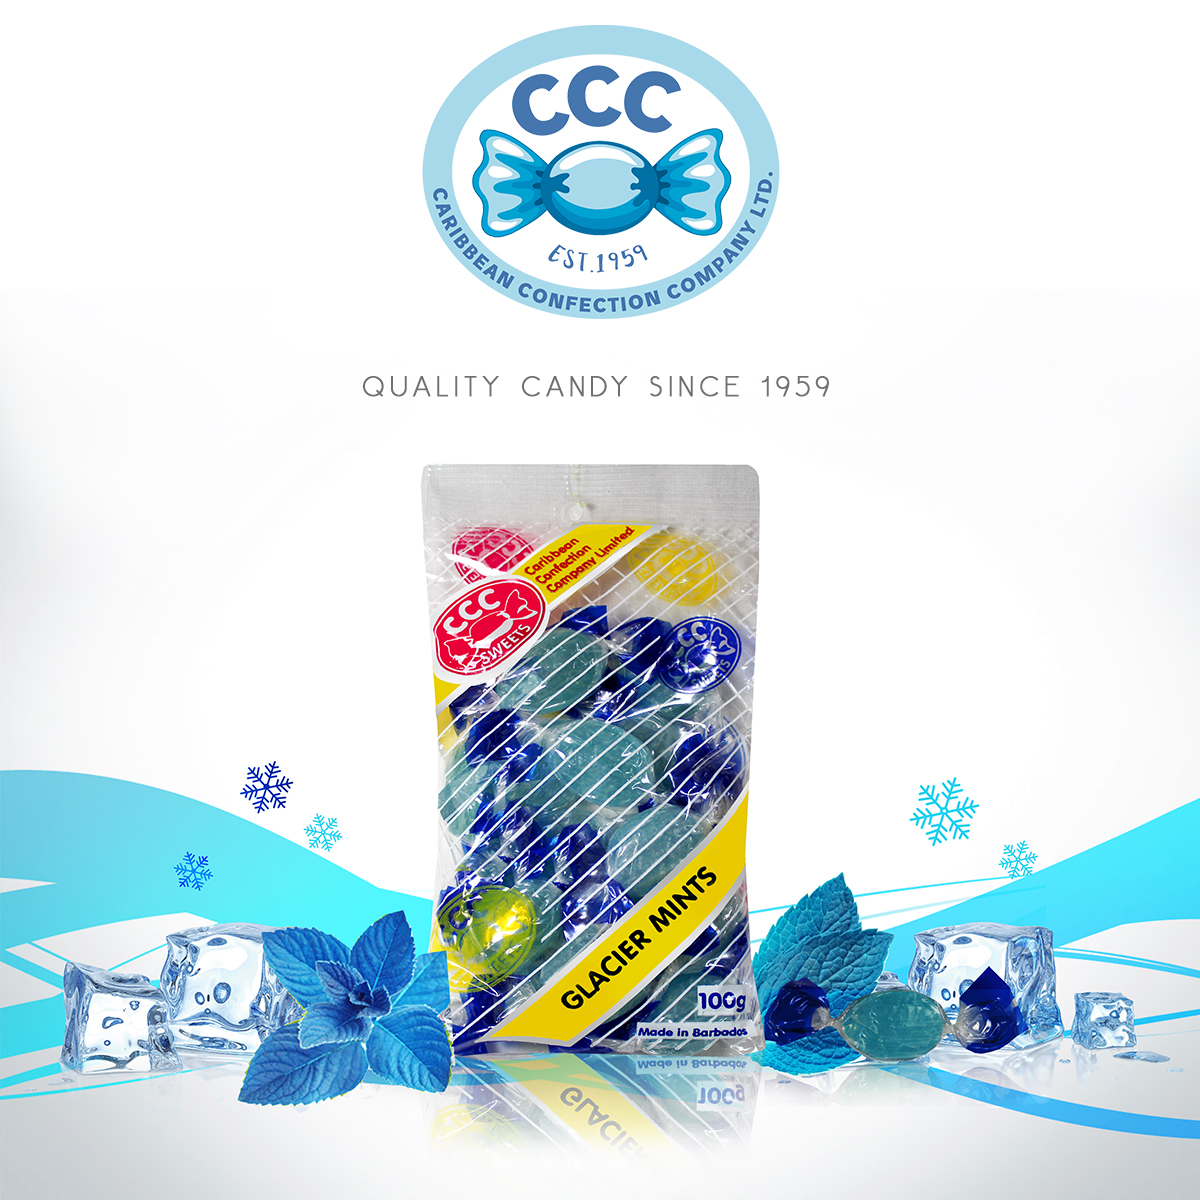 Caribbean Confection Co Ltd - Confectioners